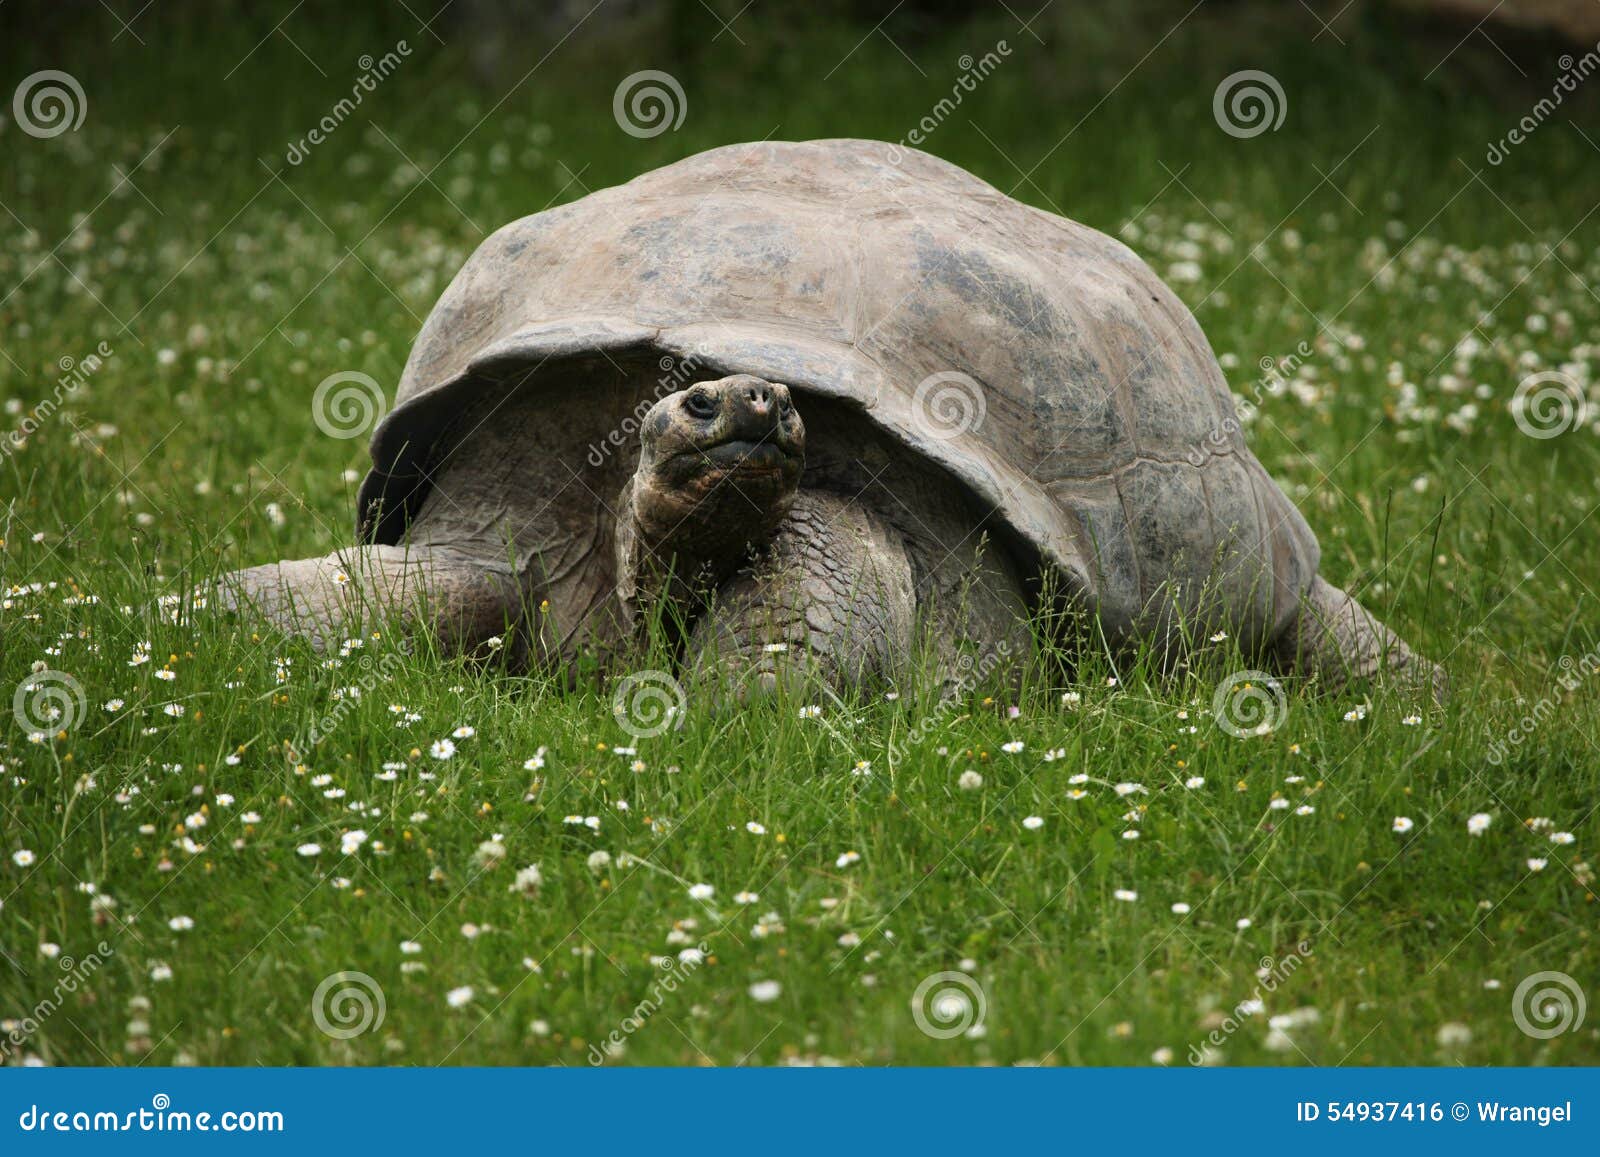 santa cruz galapagos giant tortoise (chelonoidis nigra porteri)